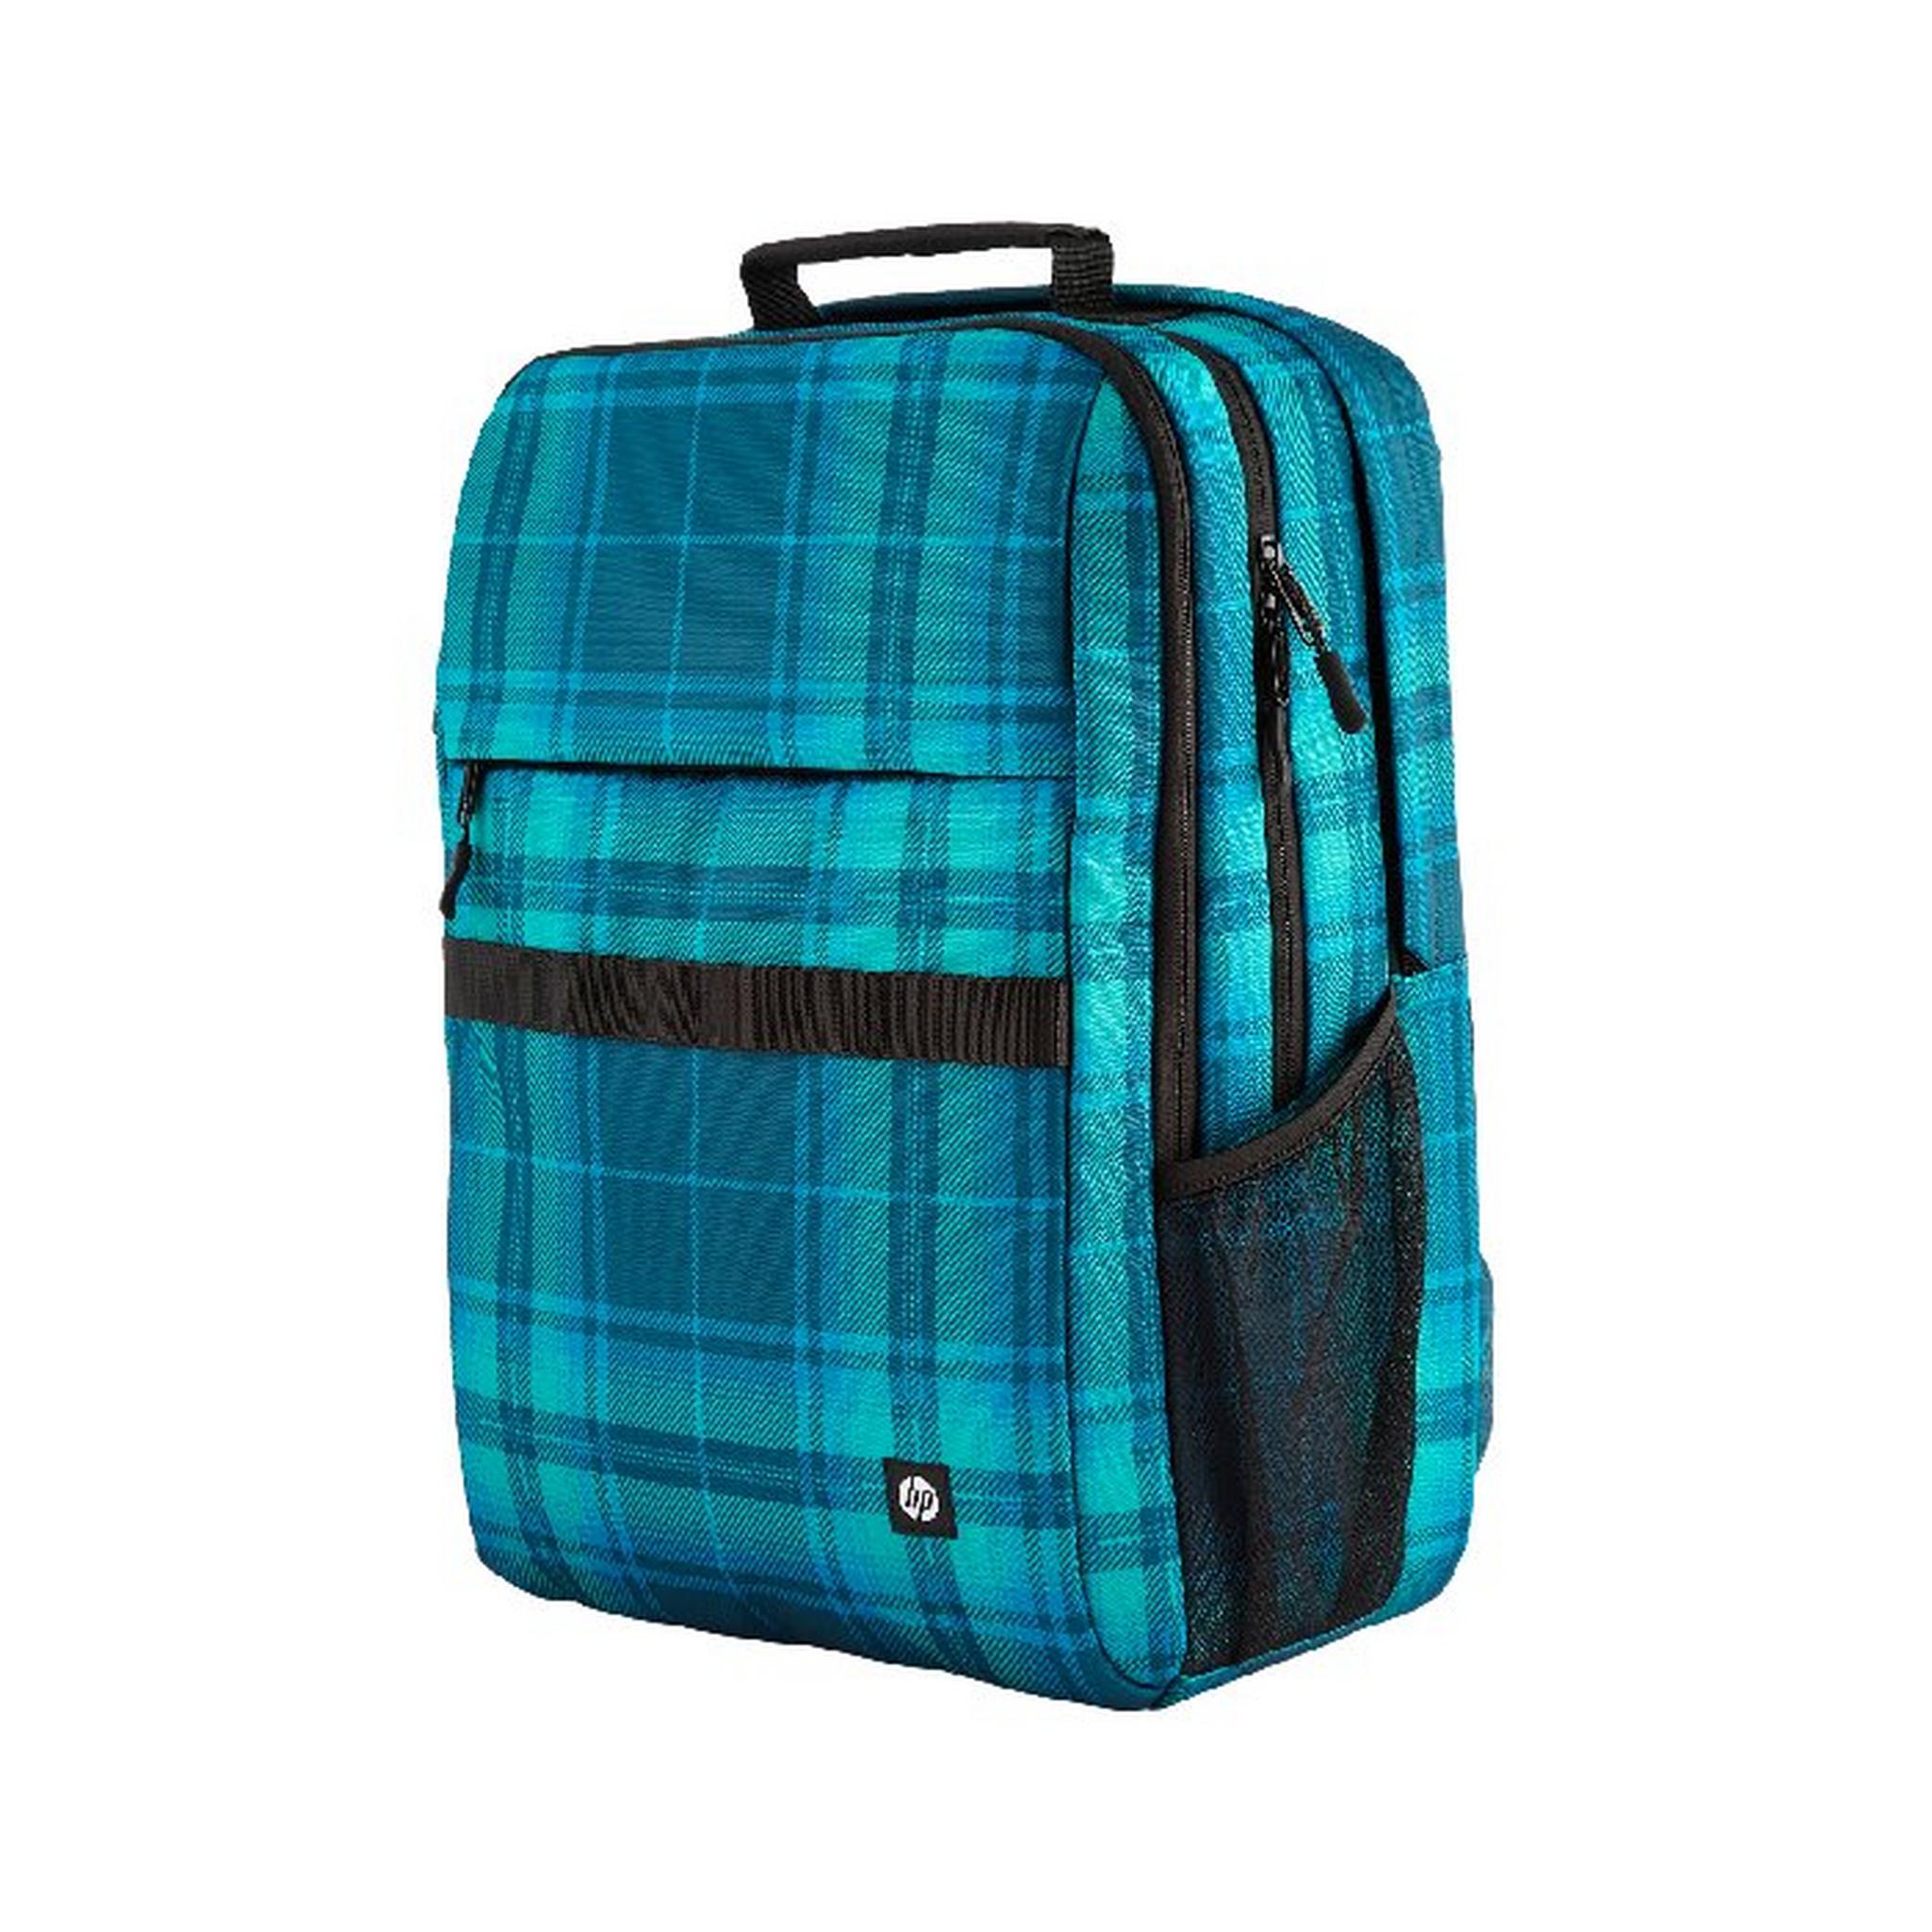 HEWLETT PACKARD Campus 16.1 inch XL Laptop  Backpack, 7J594AA - Tartan Blue